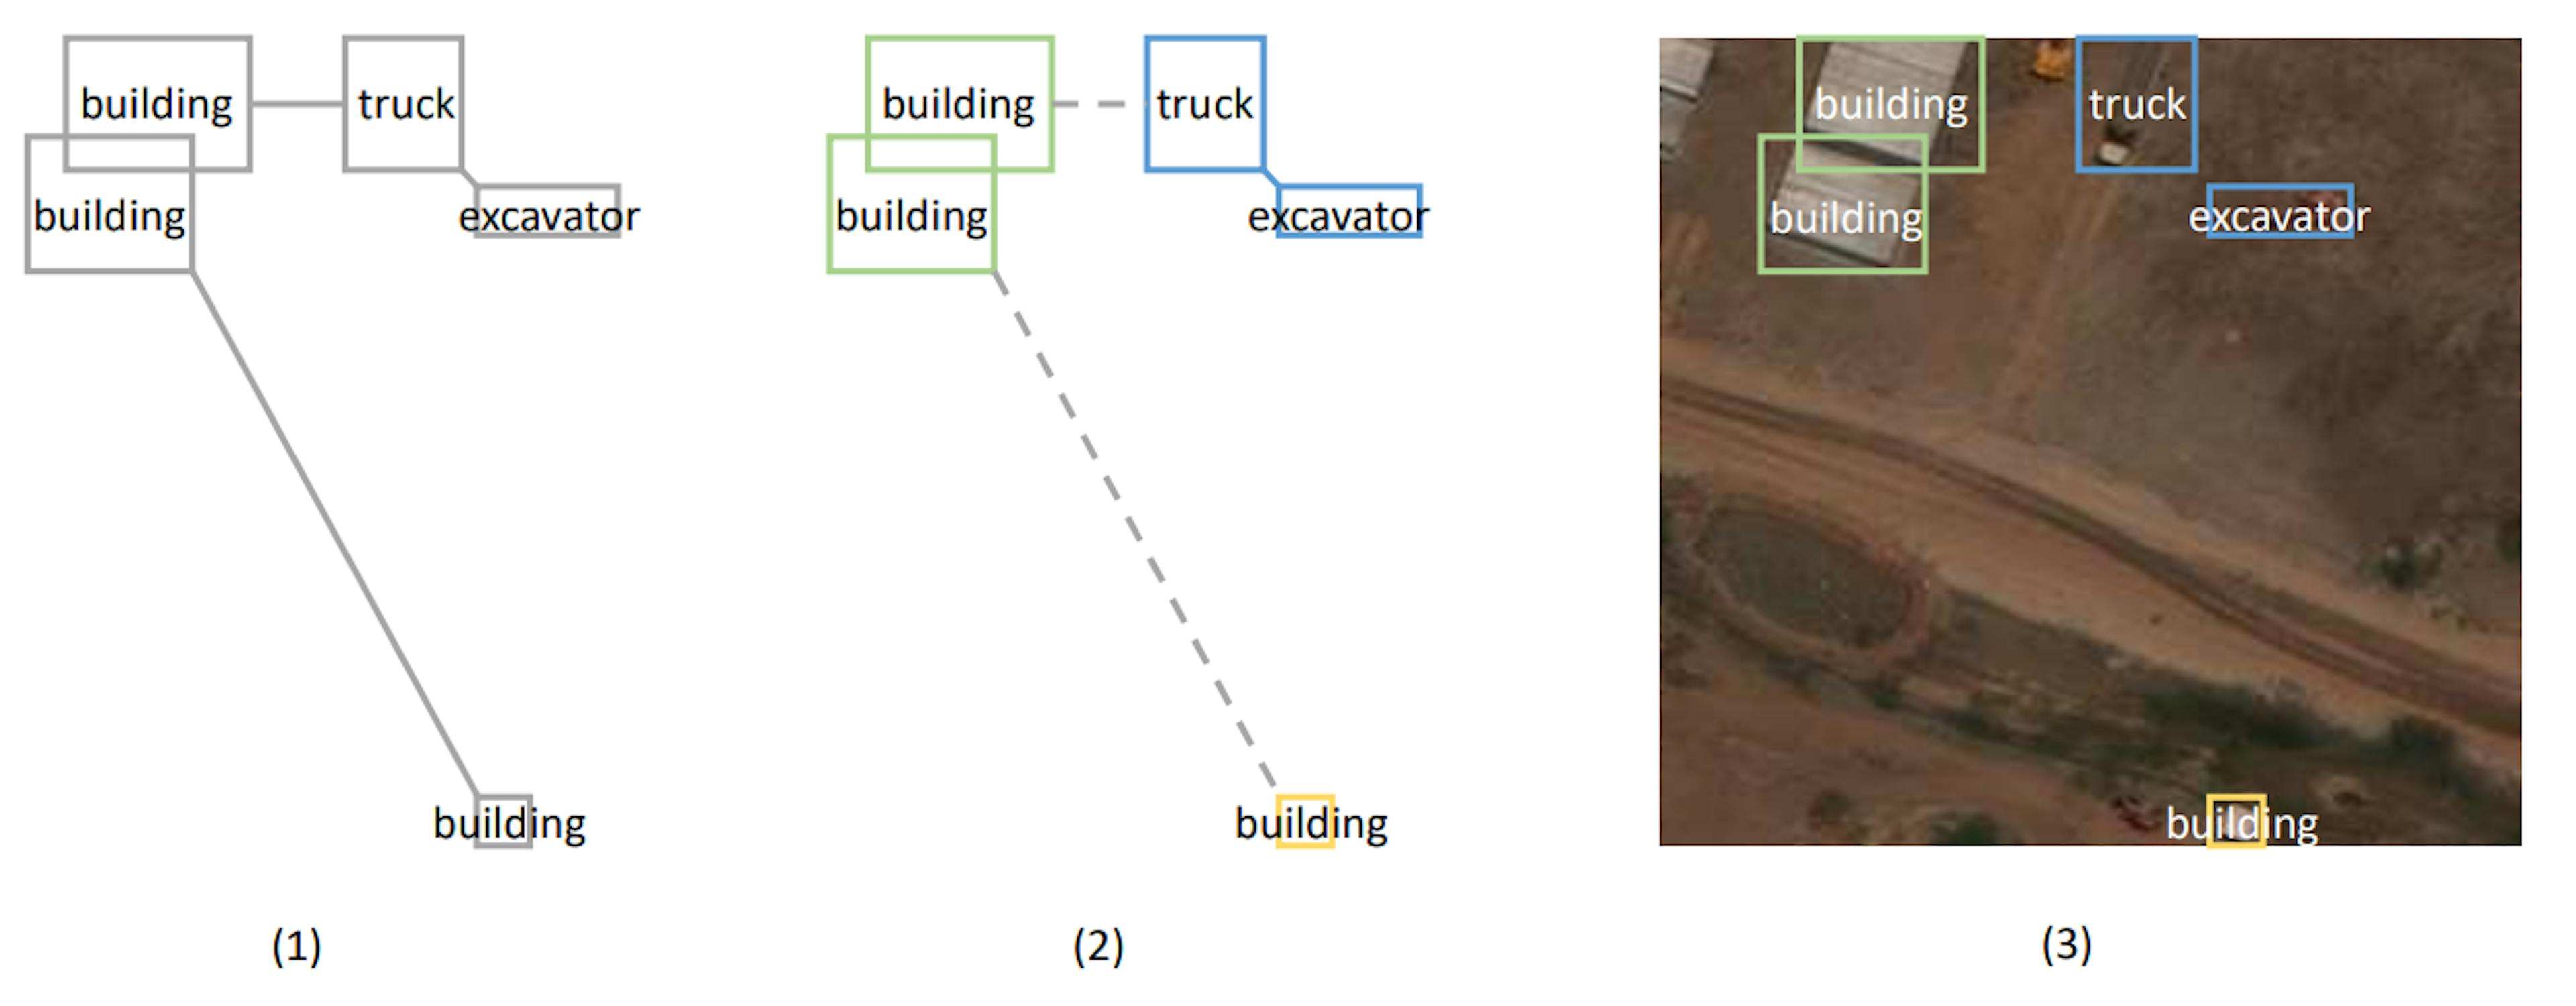 图 1：基于 MST 的聚类算法说明。图 (1) 演示了所创建的表示最小生成树的图。不同类型对象之间的距离增加了额外的长度。图 (2) 显示了通过切割长边形成的聚类。图 (3) 将对象的位置投影到真实图像中。